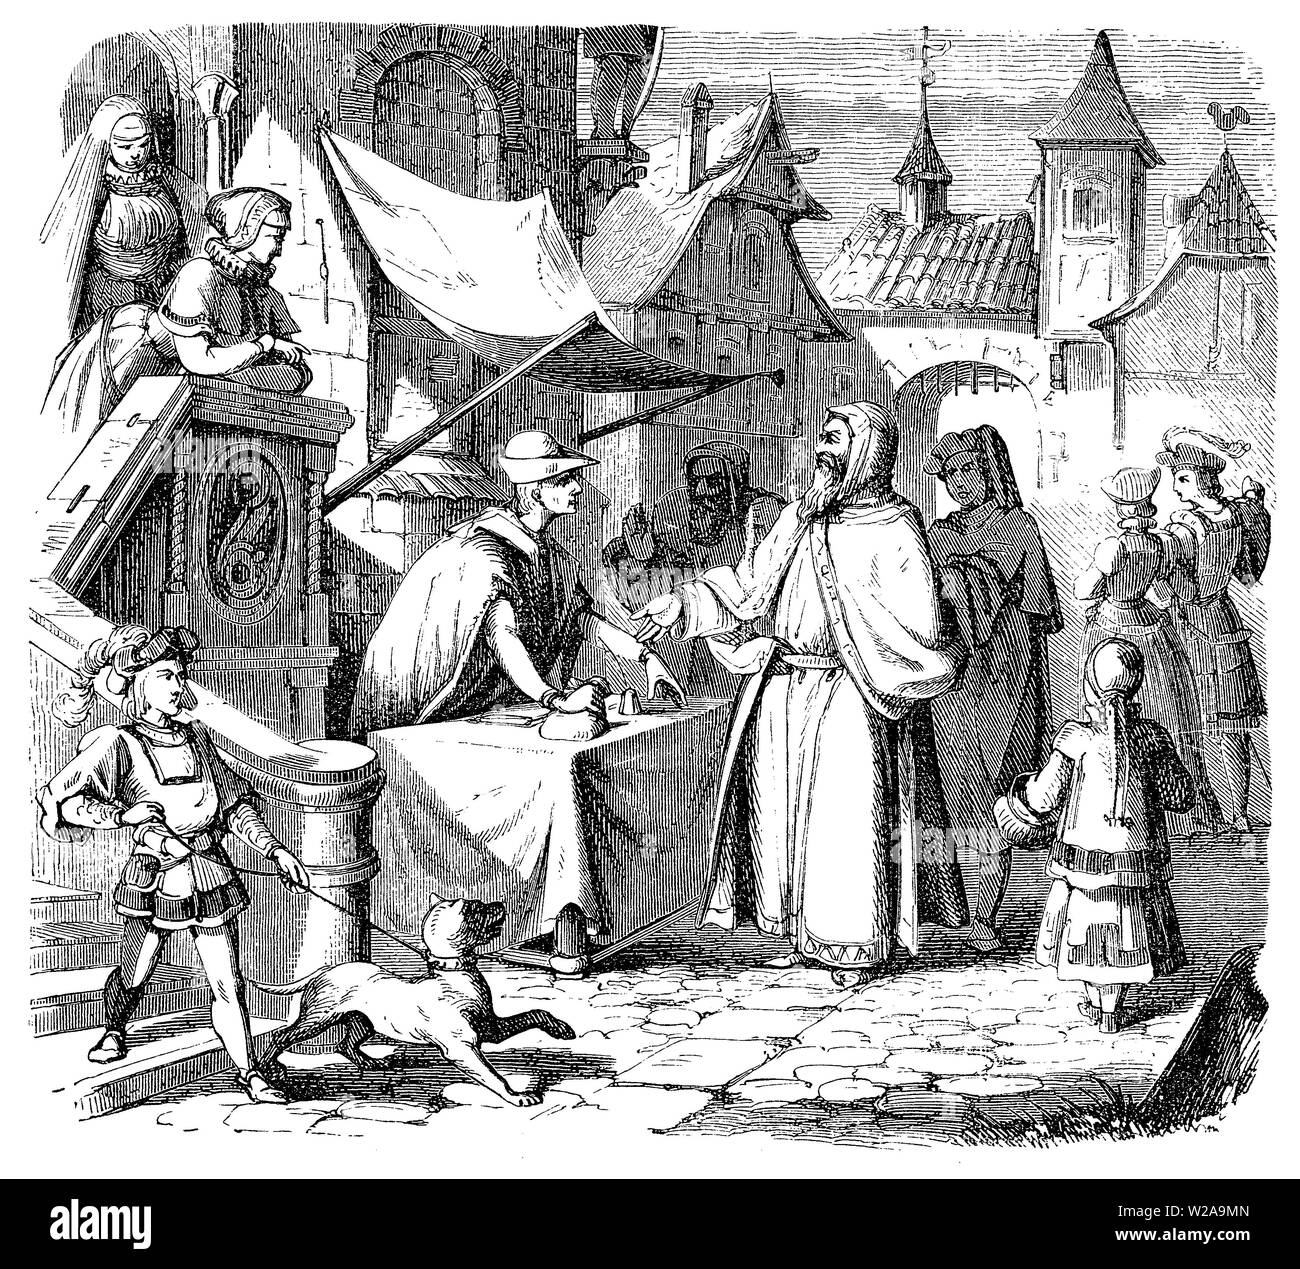 Ville médiévale, une scène au voyageur marchand jude l'échange d'argent, wc séparés Banque D'Images